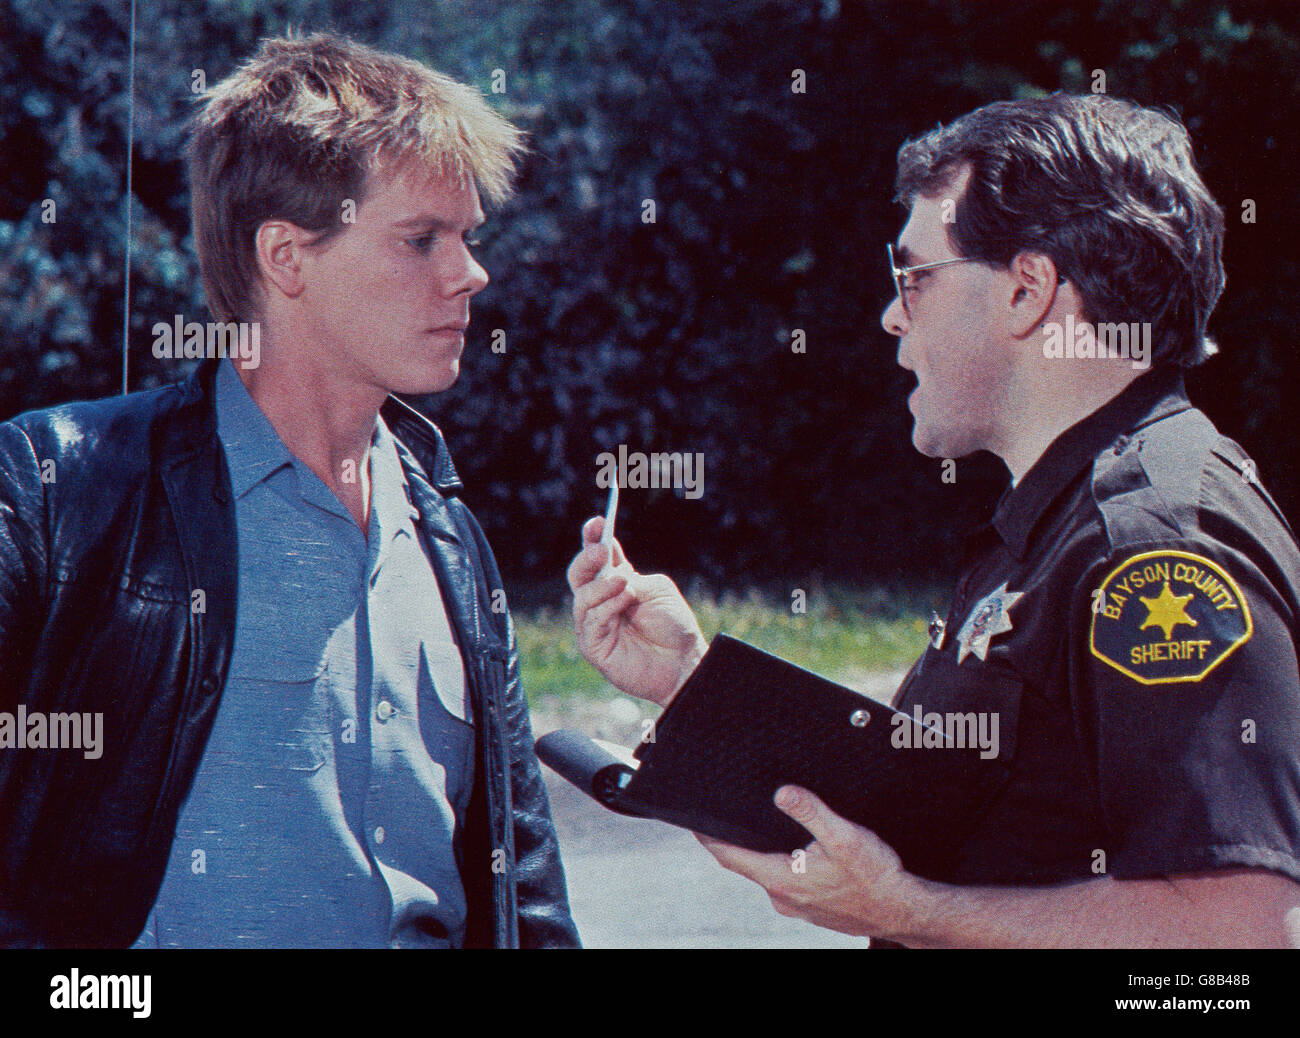 Footloose, USA 1984, Regie: Herbert Ross, Darsteller: Kevin Bacon, Michael Flynn Foto Stock